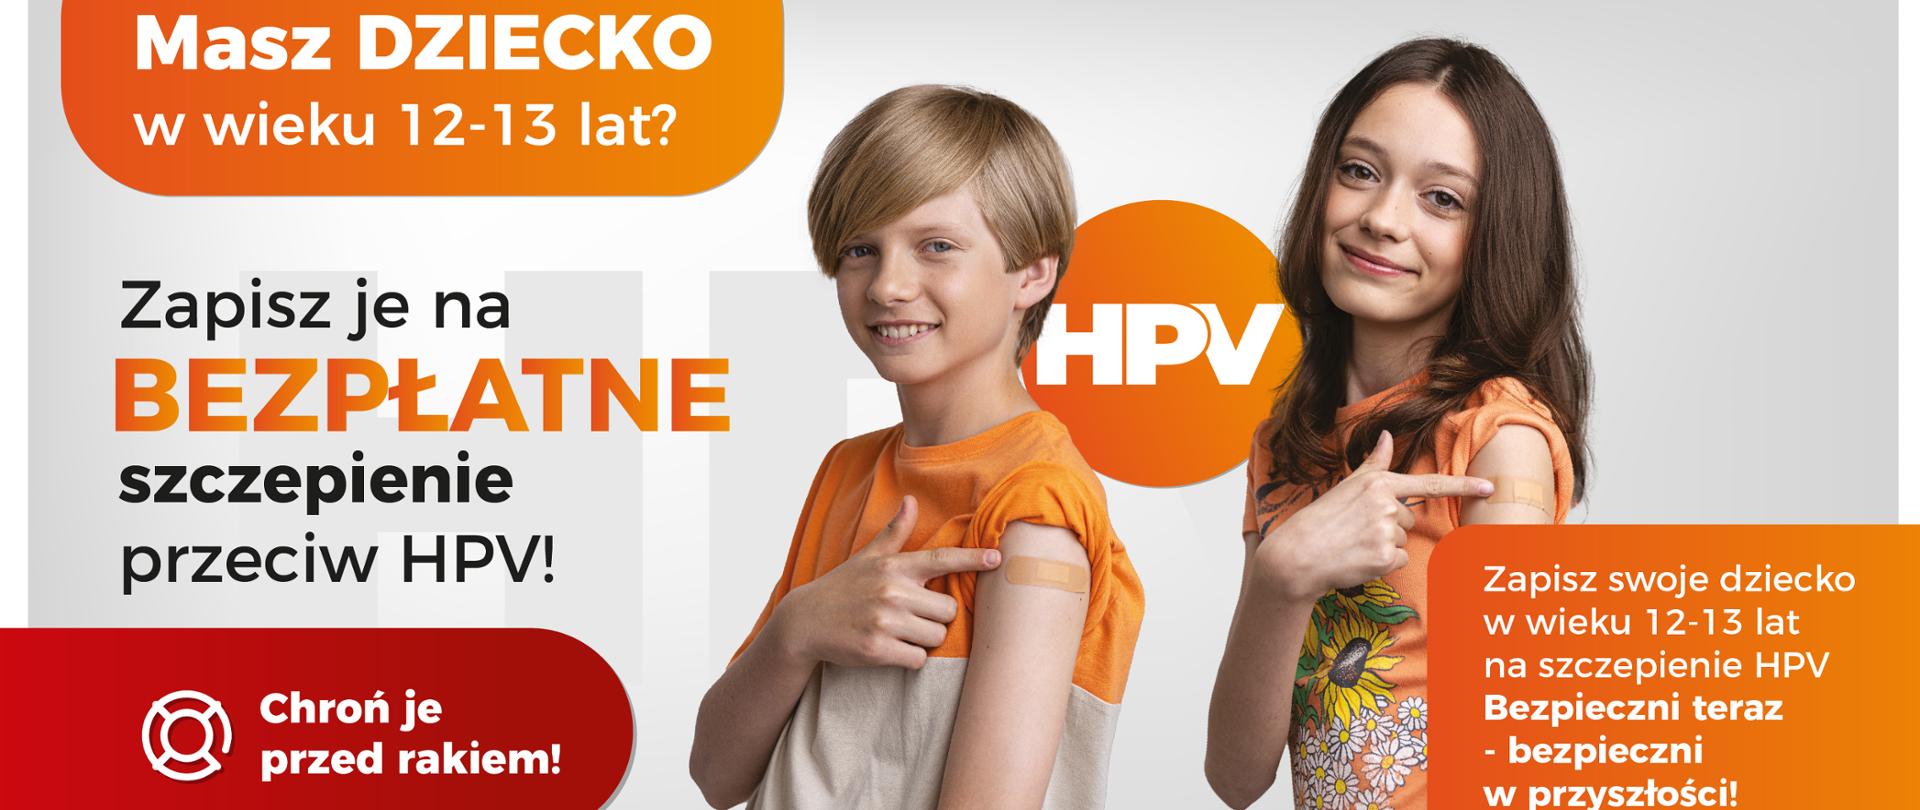 Na szarym tle dwoje dzieci, chłopiec i dziewczynka wskazują palcami na miejsce po szczepieniu. Widoczne napisy: "Masz dziecko w wieku 12-13 lat?", "Zapisz je na bezpłatne szczepienie przeciw HPV!", "Chroń je przed rakiem", "Zapisz swoje dziecko w wieku 12-13 lat na szczepienie HPV Bezpieczni teraz - bezpieczni w przyszłości!".